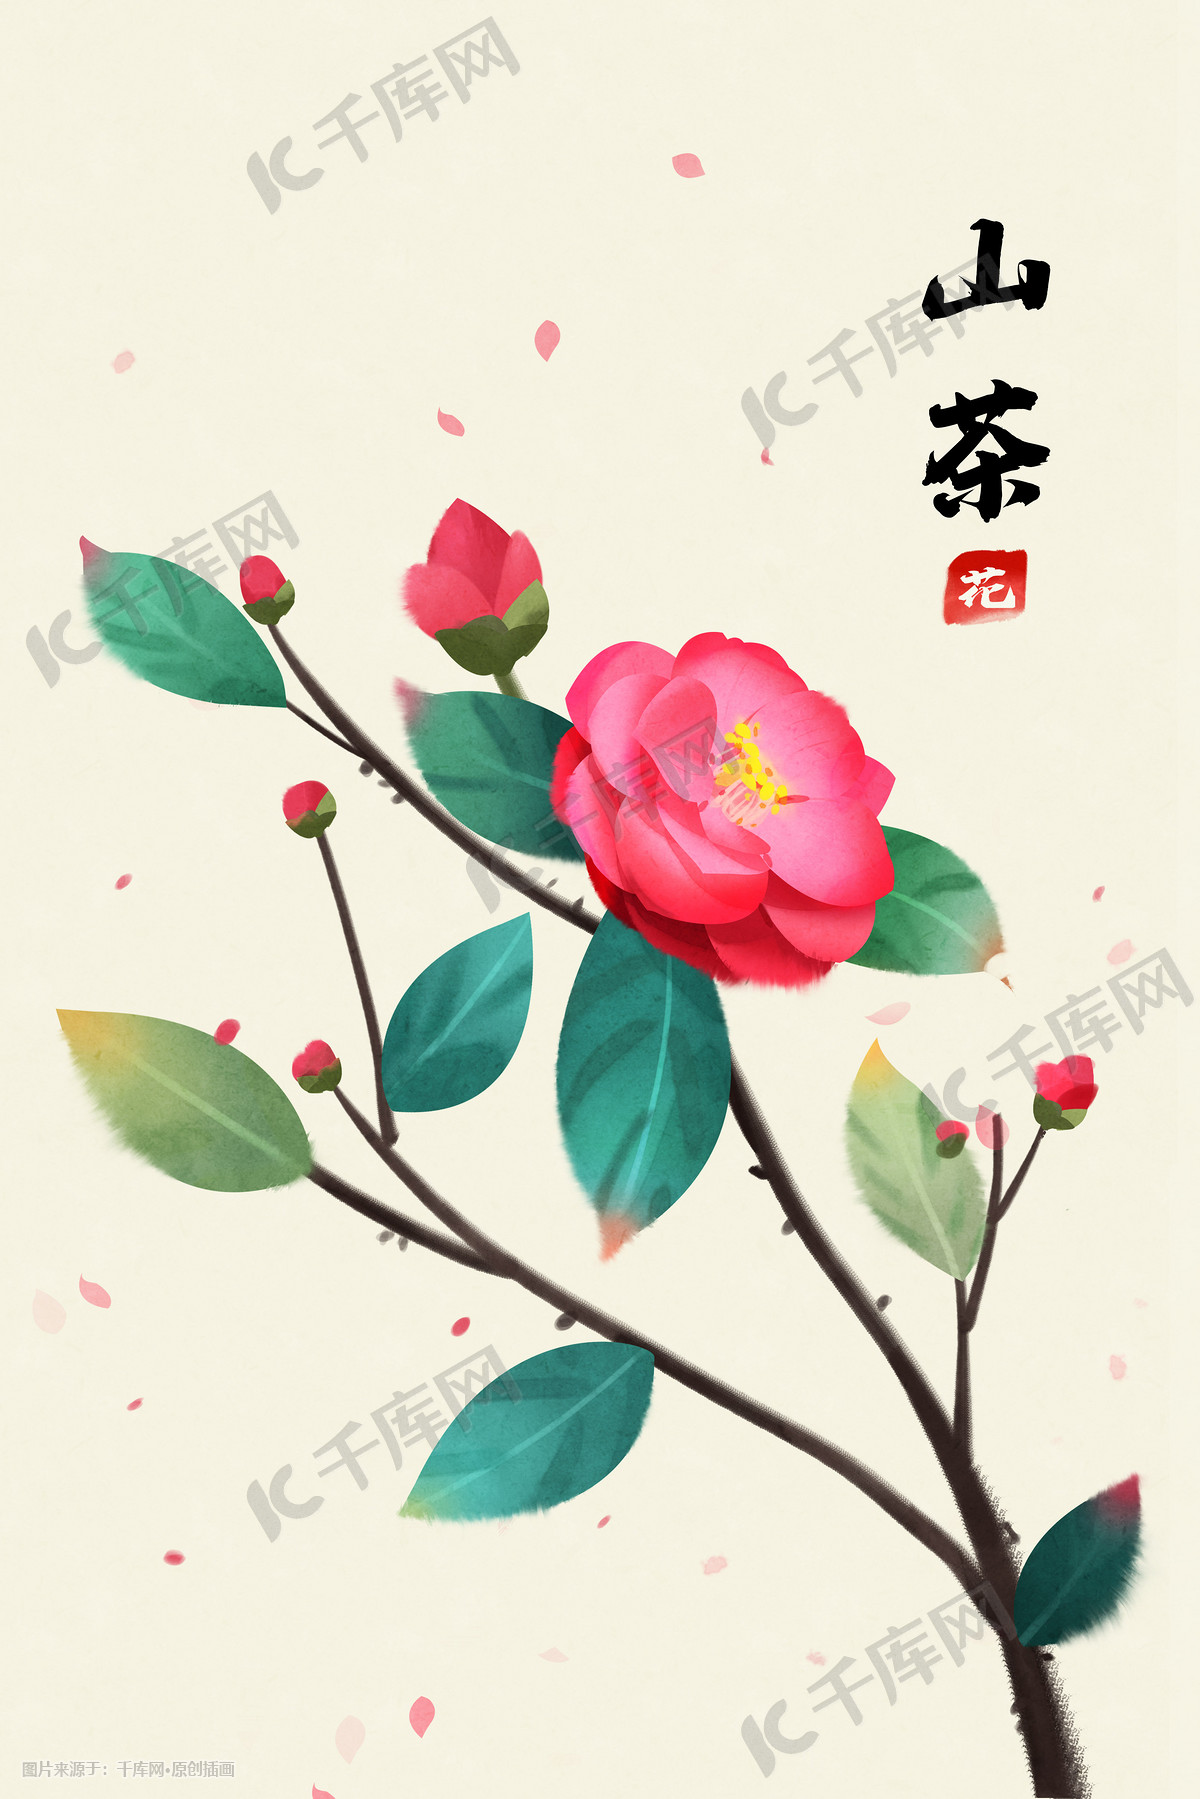 第27课:工笔山茶-勾线花朵-zhang1987wenwen